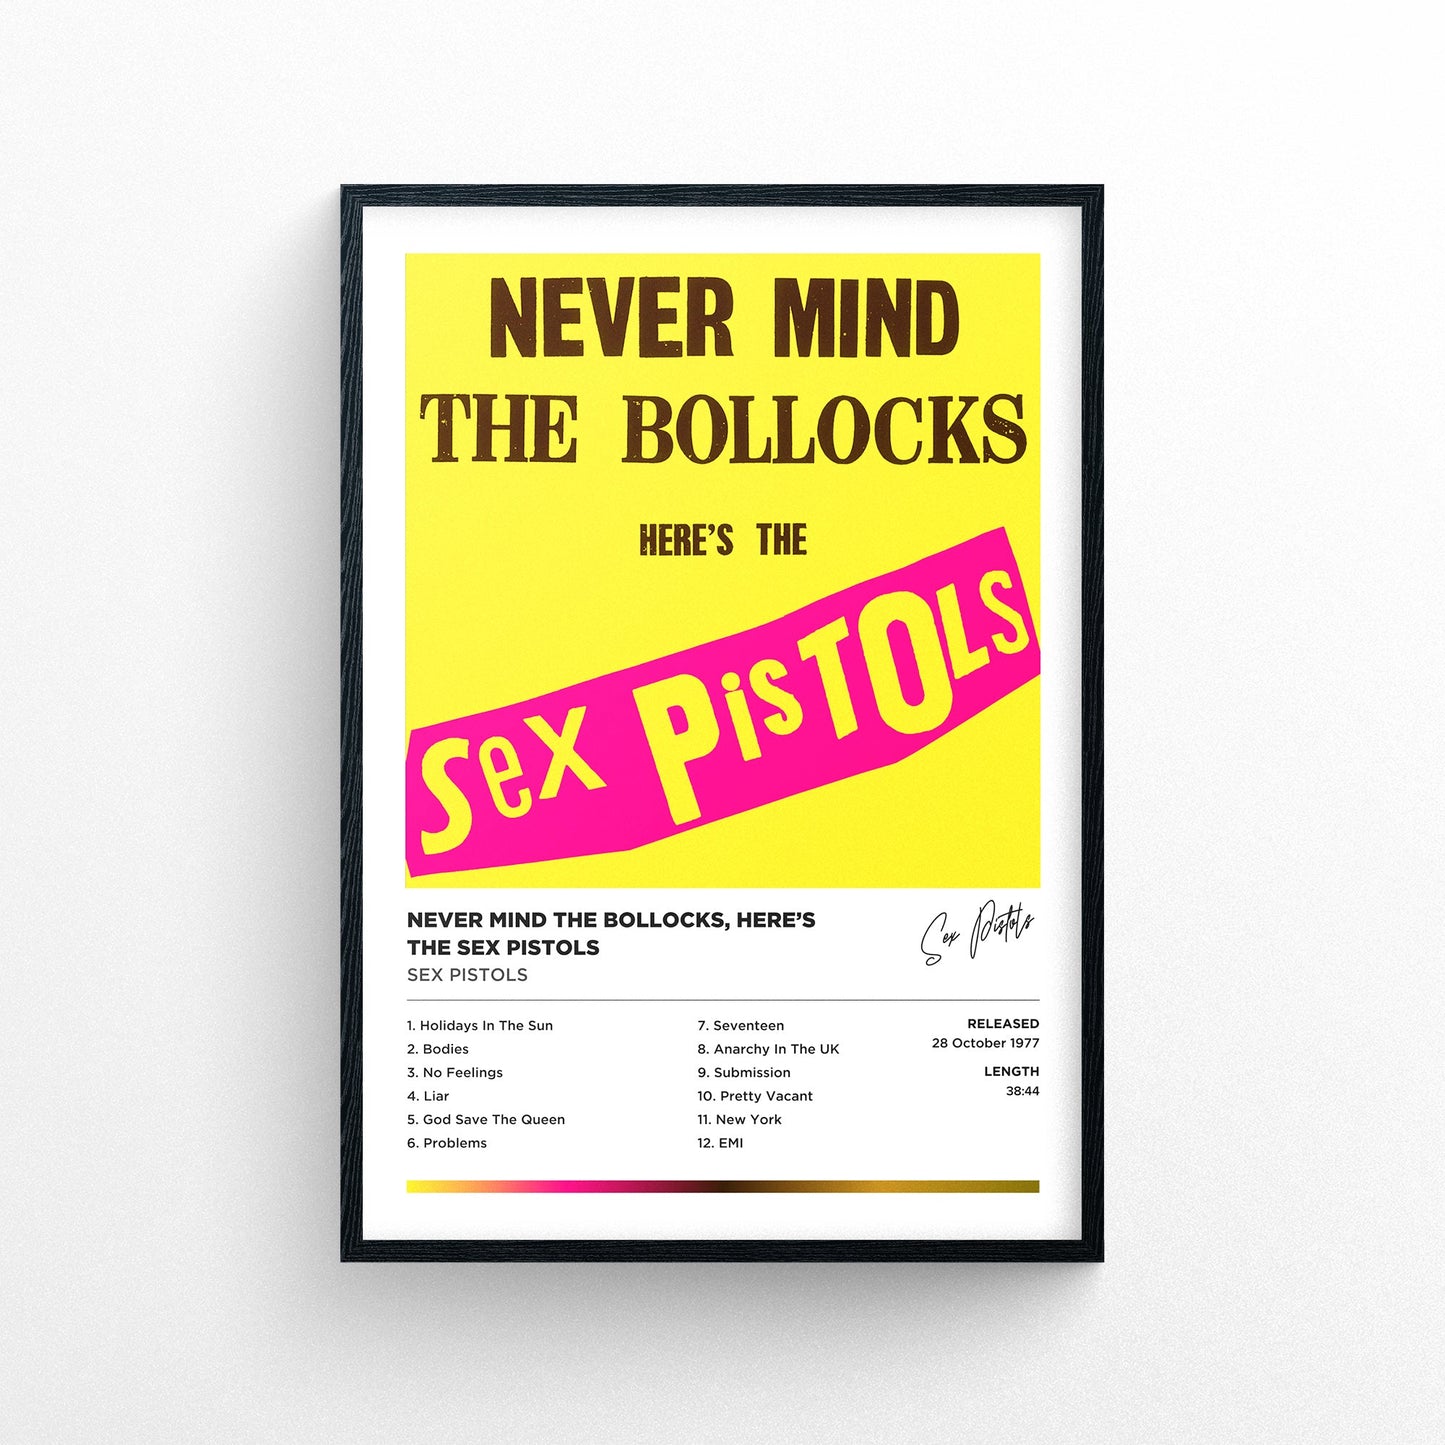 Sex Pistols - Never Mind The Bollocks Here's The Sex Pistols Framed Poster Print | Polaroid Style | Album Cover Artwork